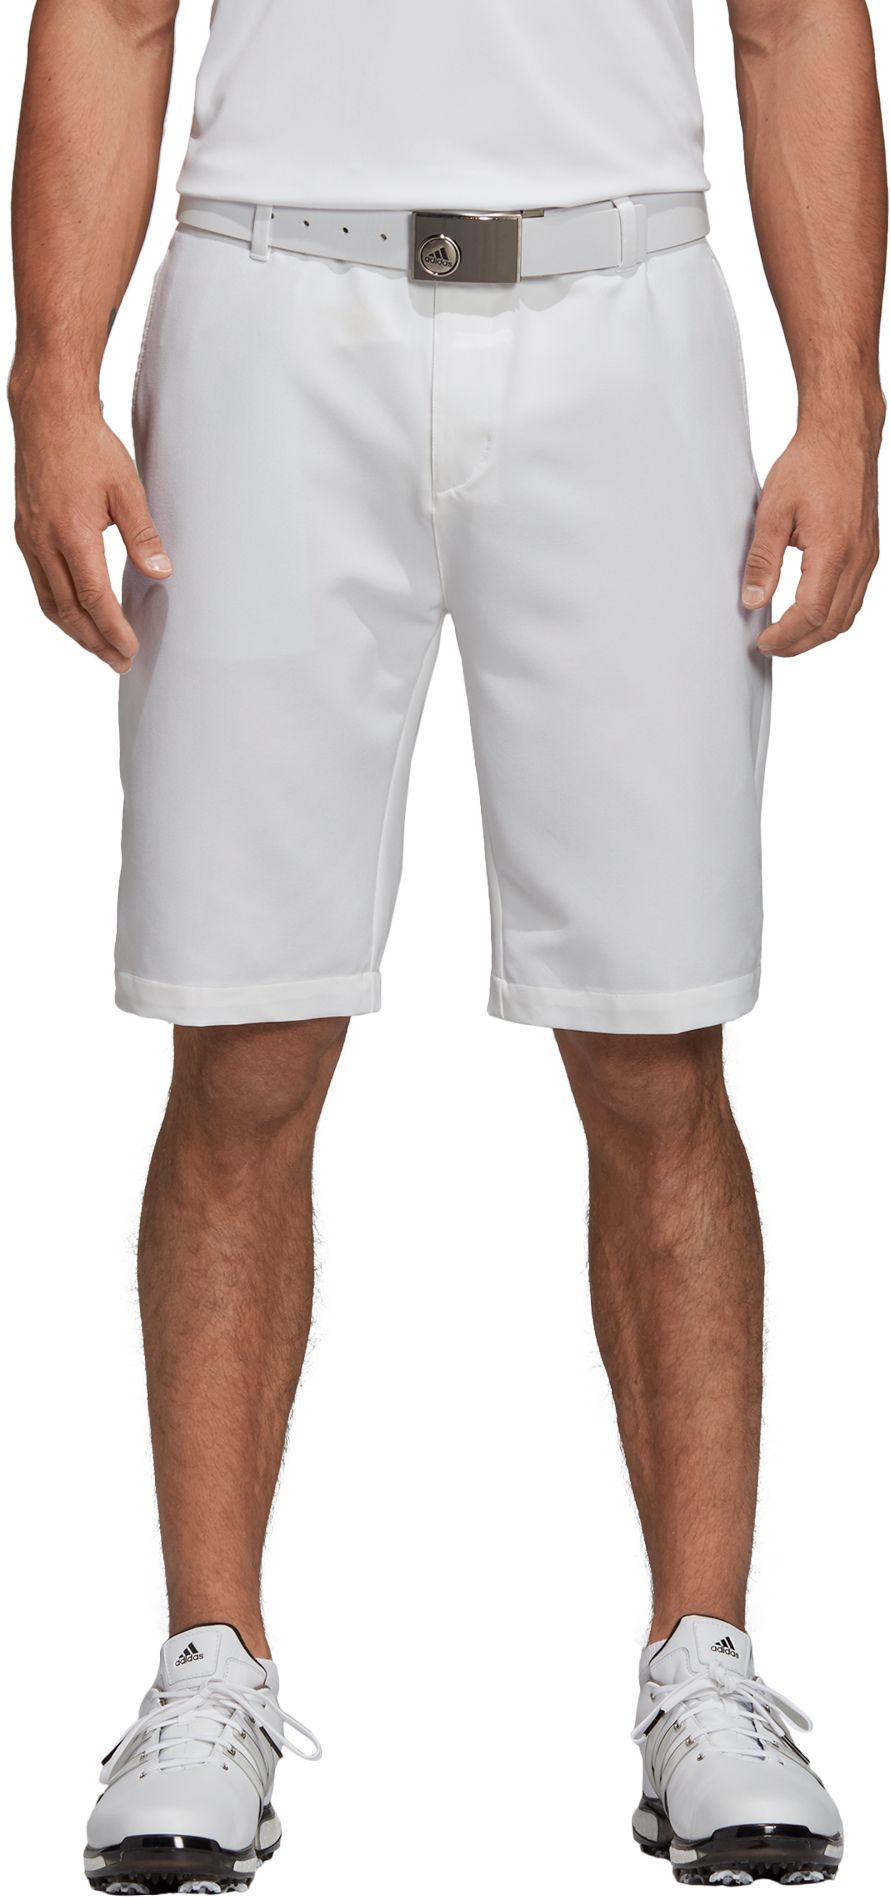 adidas slim fit golf shorts